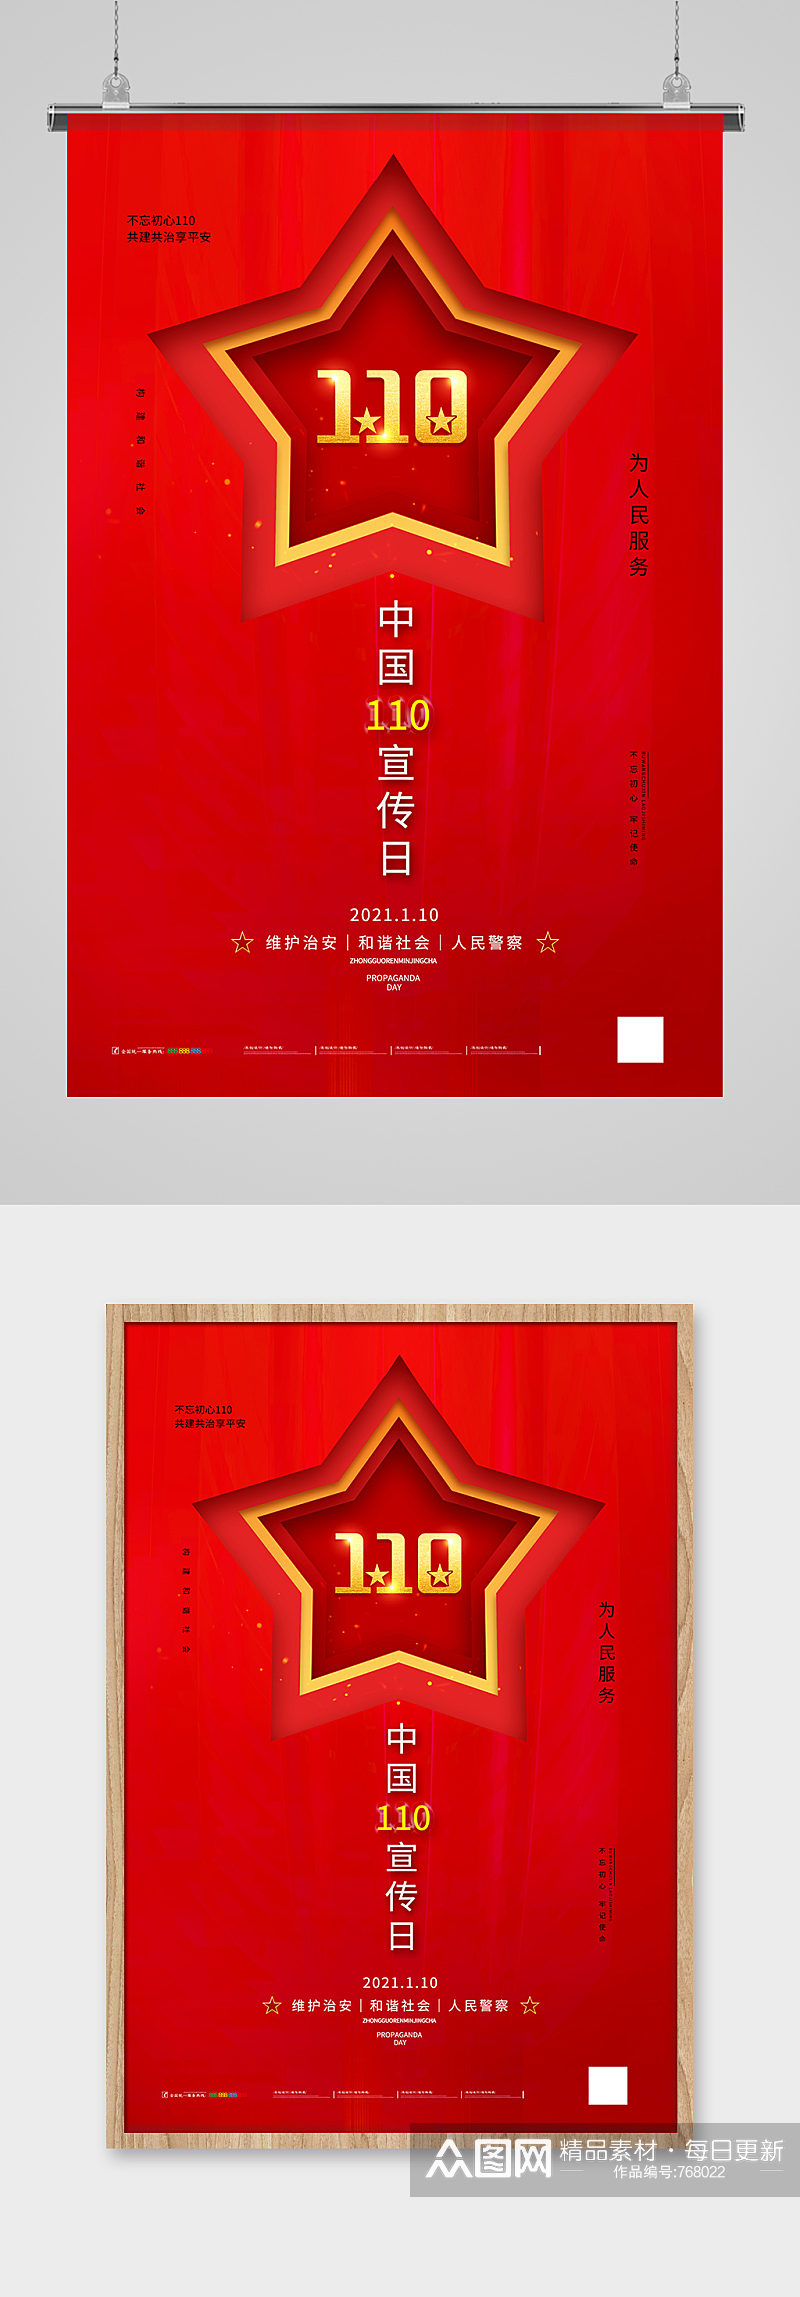 红金中国110宣传日海报设计素材